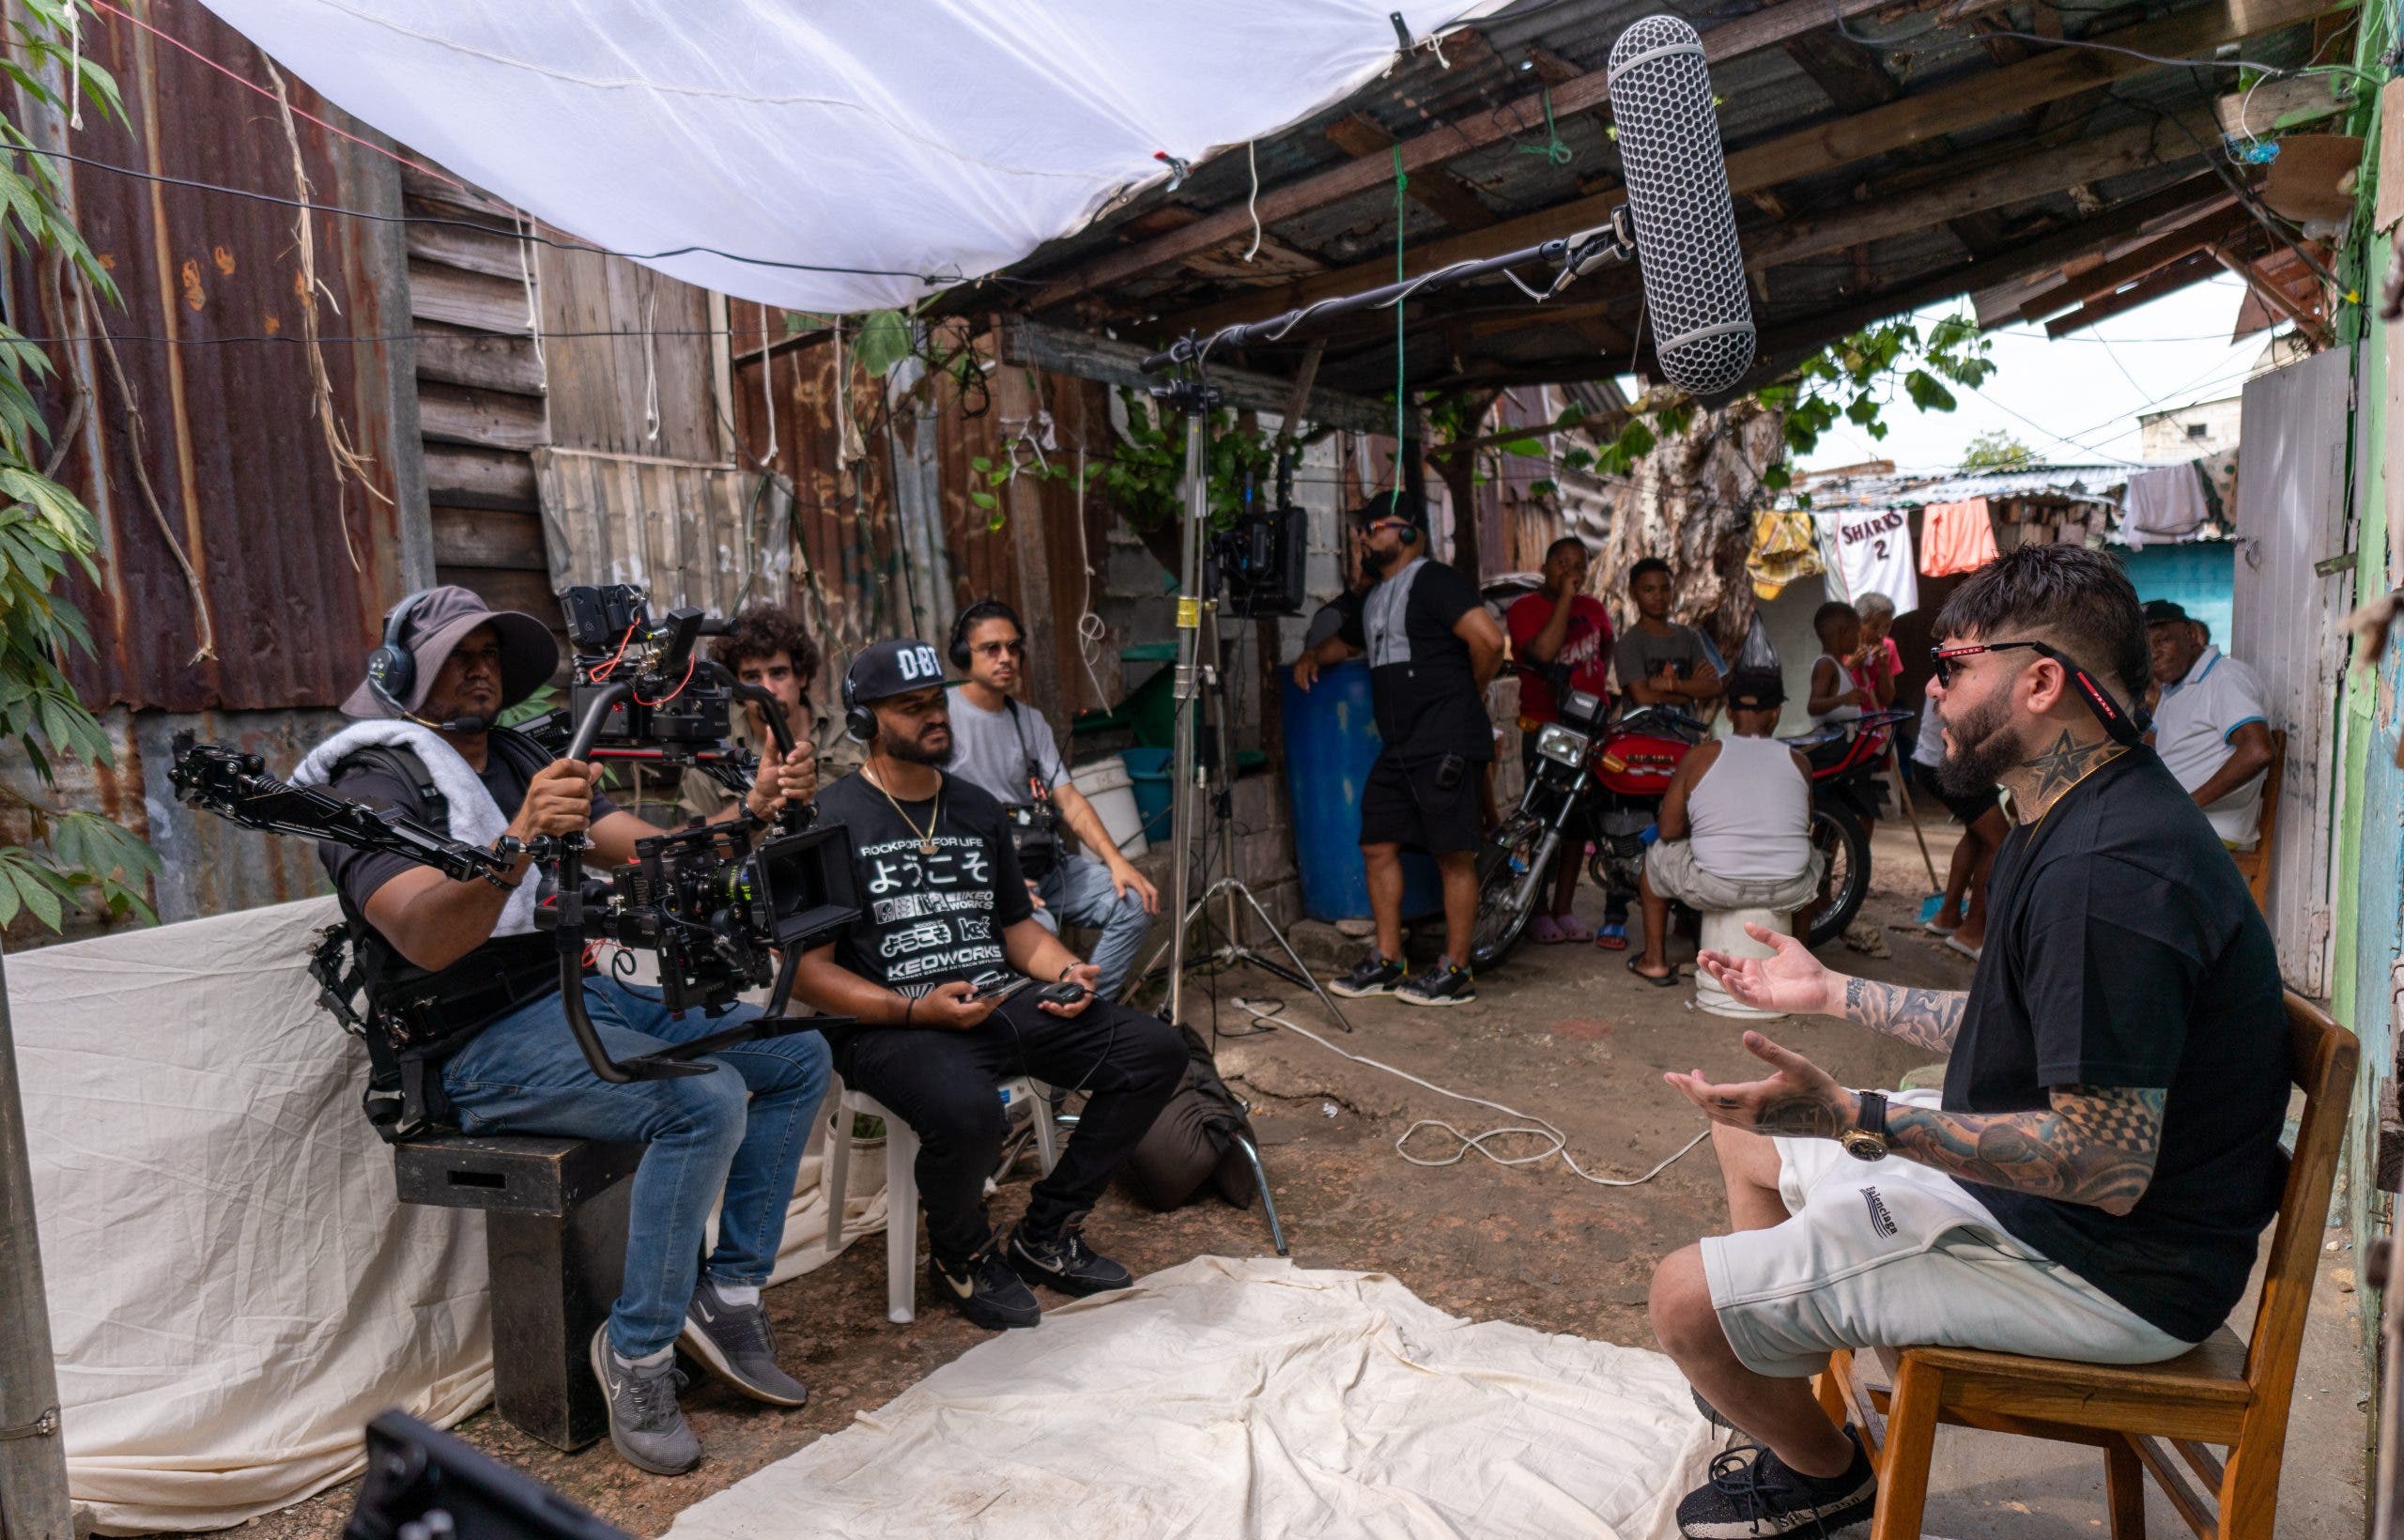 Rodrigo Films catapulta su carrera con dirección documental de Amazon “La cuna del dembow”